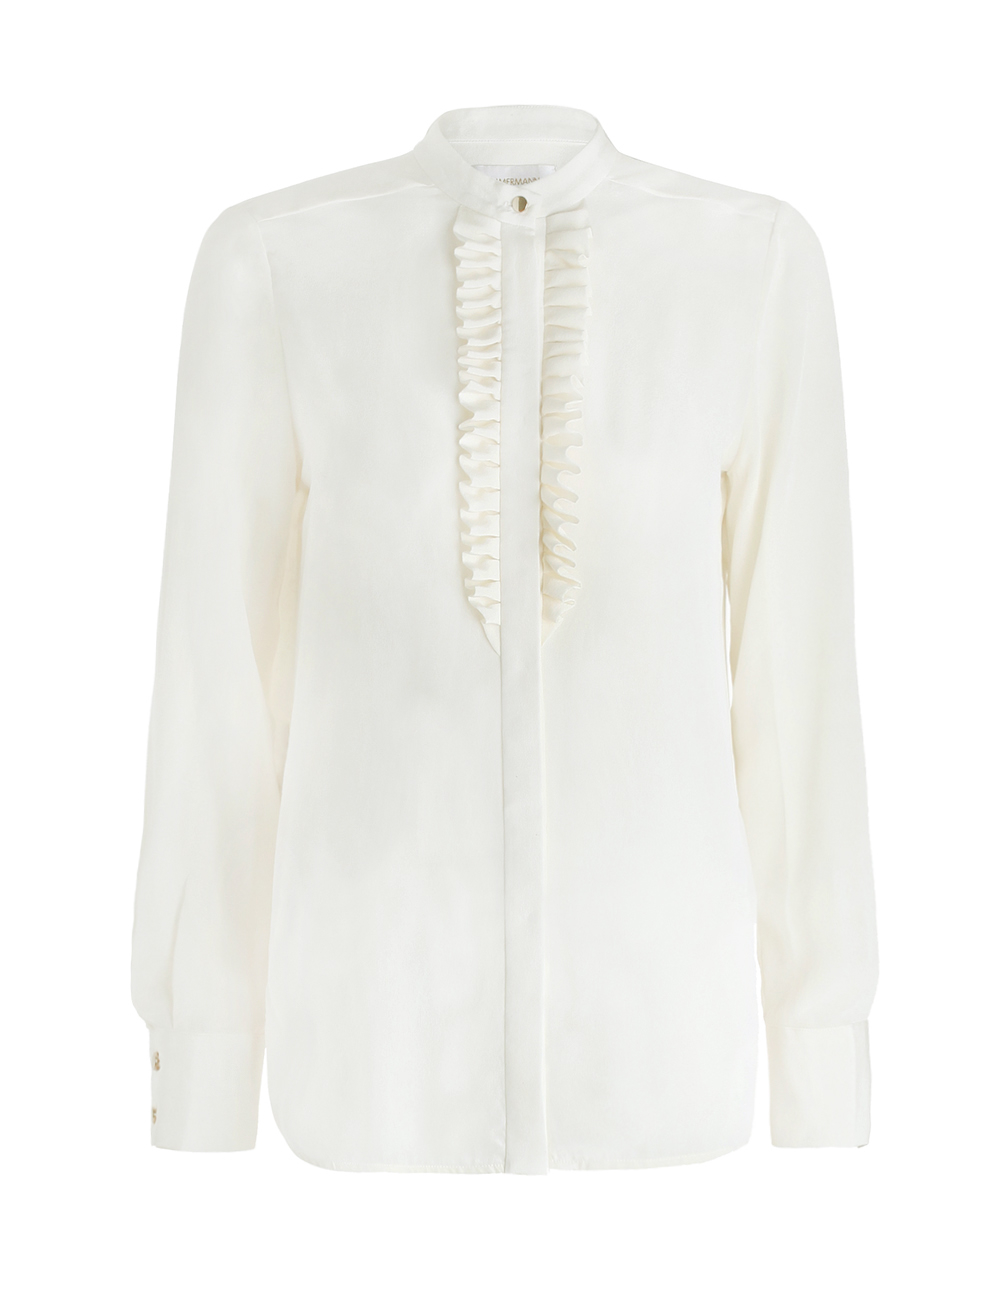 Zimmermann Silk Tuxedo Shirt in White - Lyst